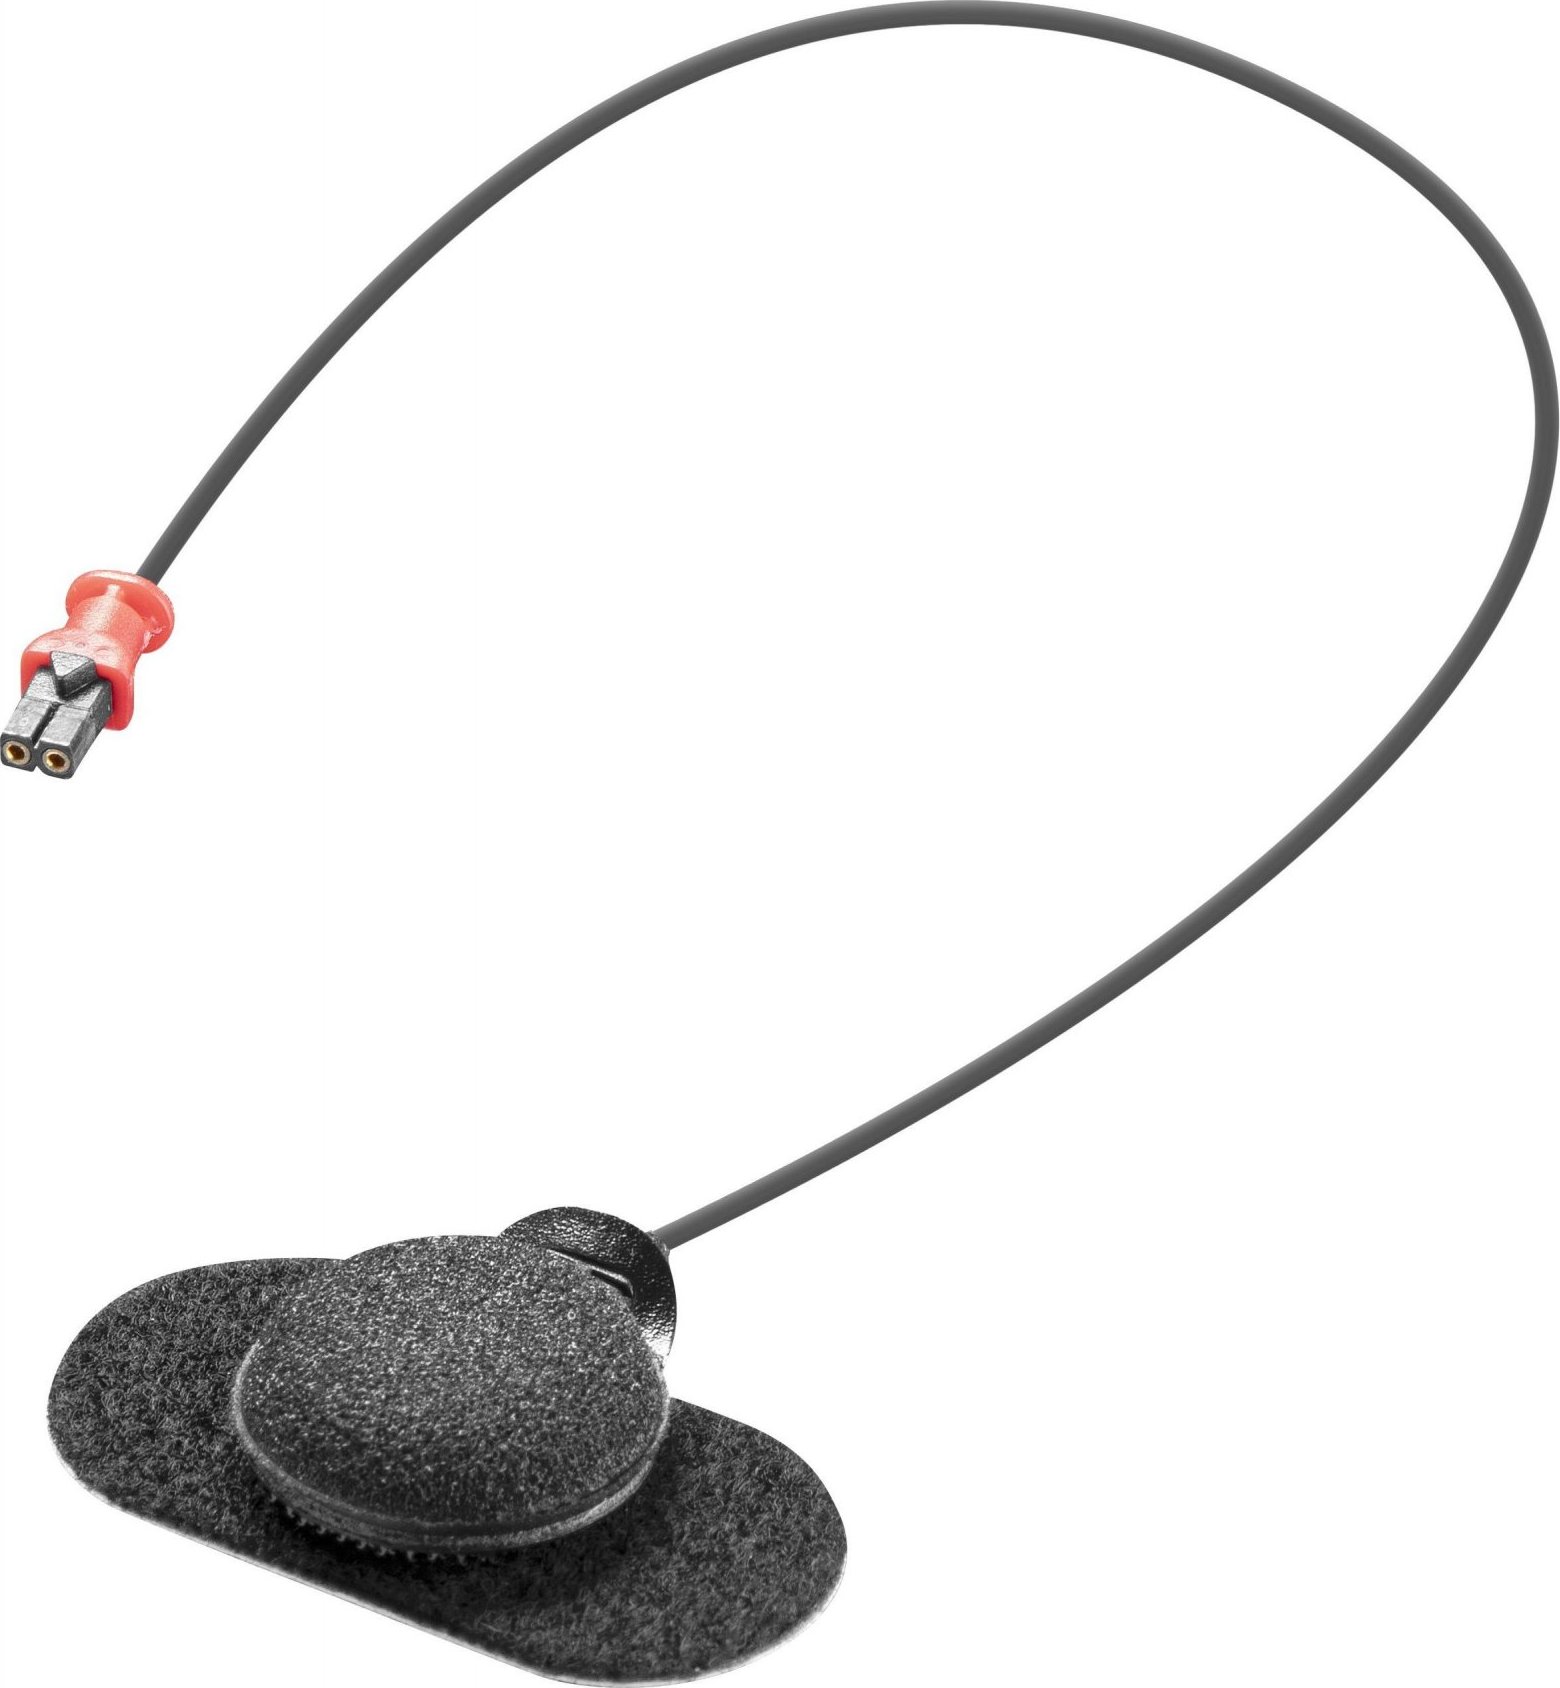 Náhradní mikrofon INTERPHONE U-COM 8R / 16 / 4 / 3 / 2 pro integrální helmy